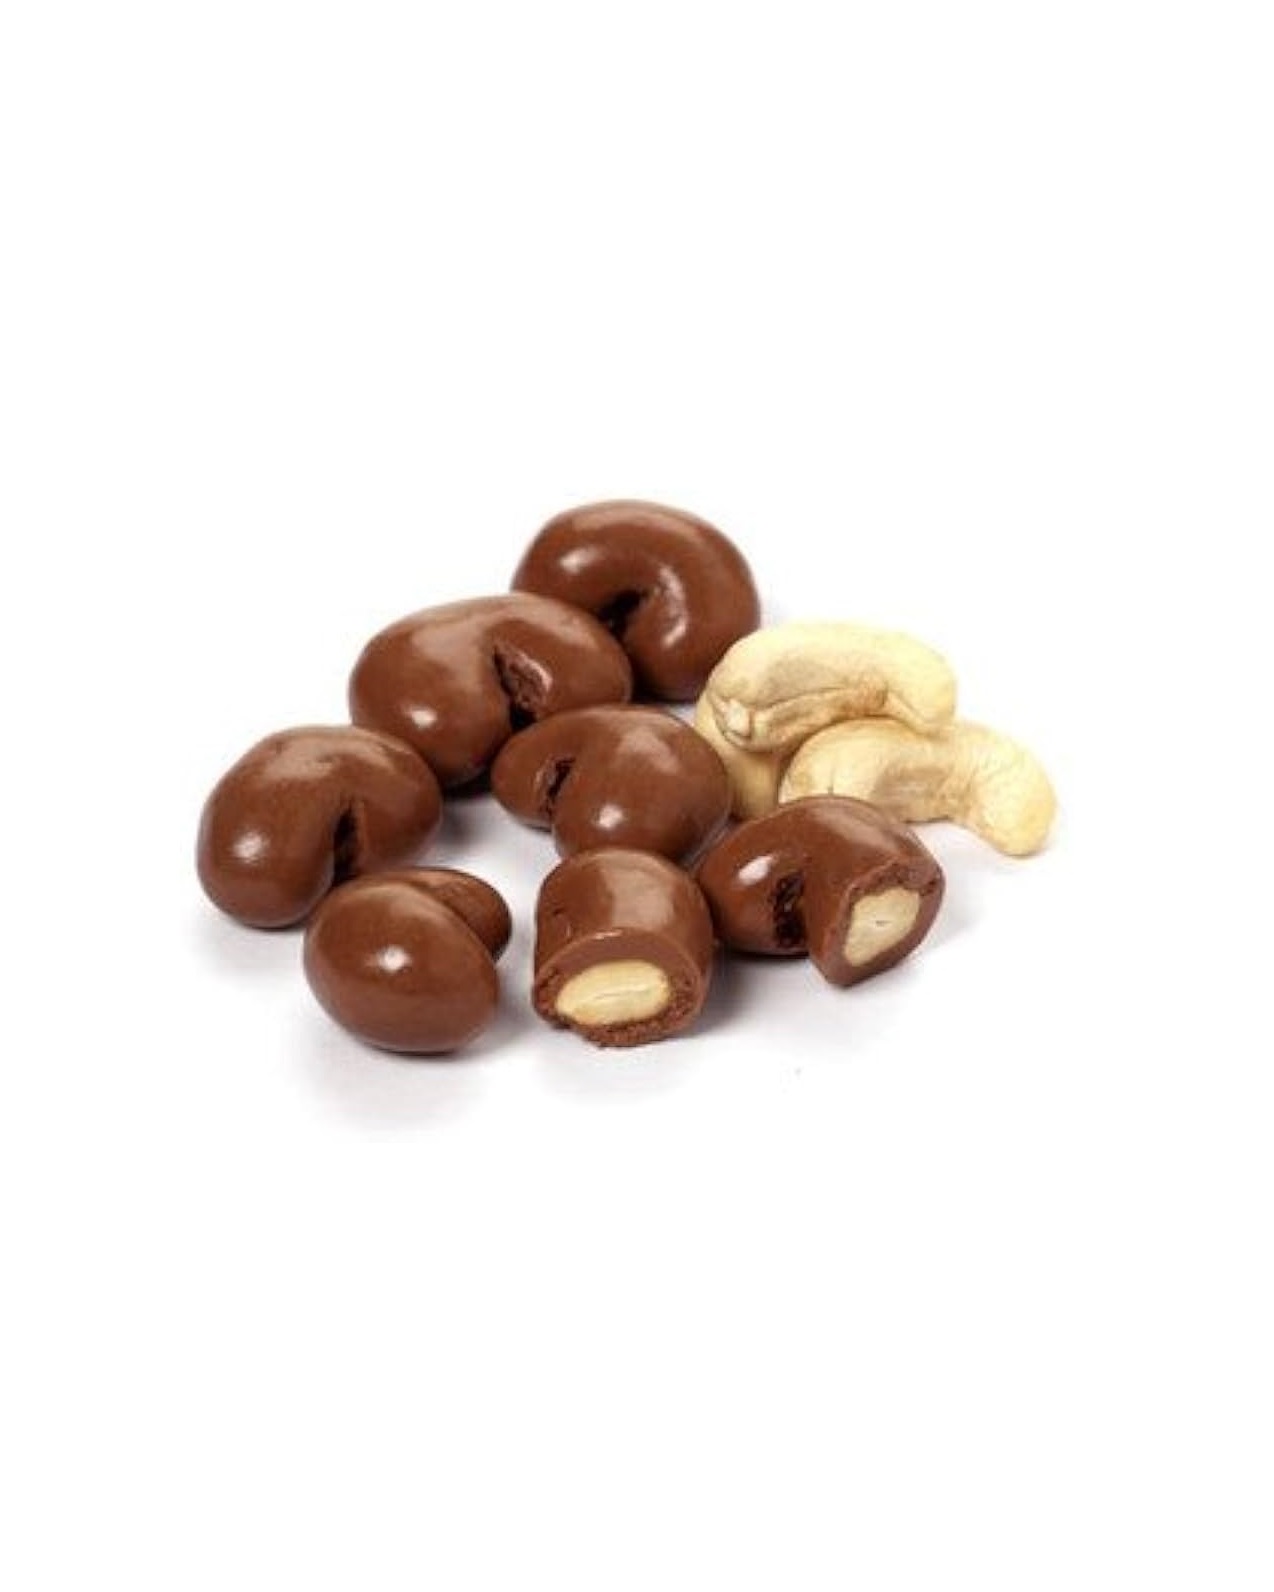 חטיף חלבון בוטנים שוקולד מריר וחמוציות מסוכרות ללא גלוטן | NATURE VALLEY